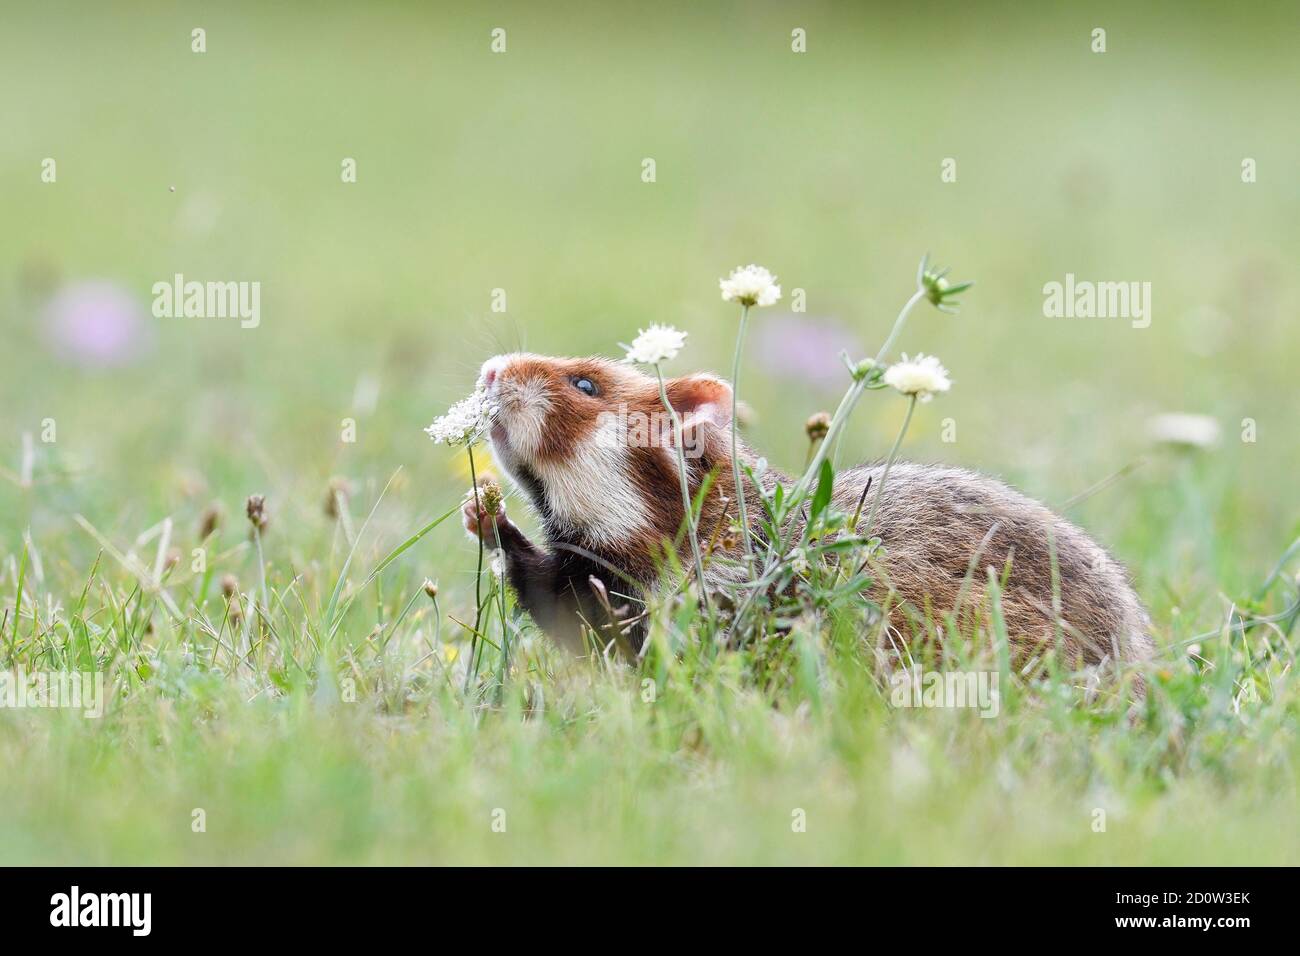 European hamster (Cricetus cricetus) sniffs a plant, Vienna, Austria, Europe Stock Photo